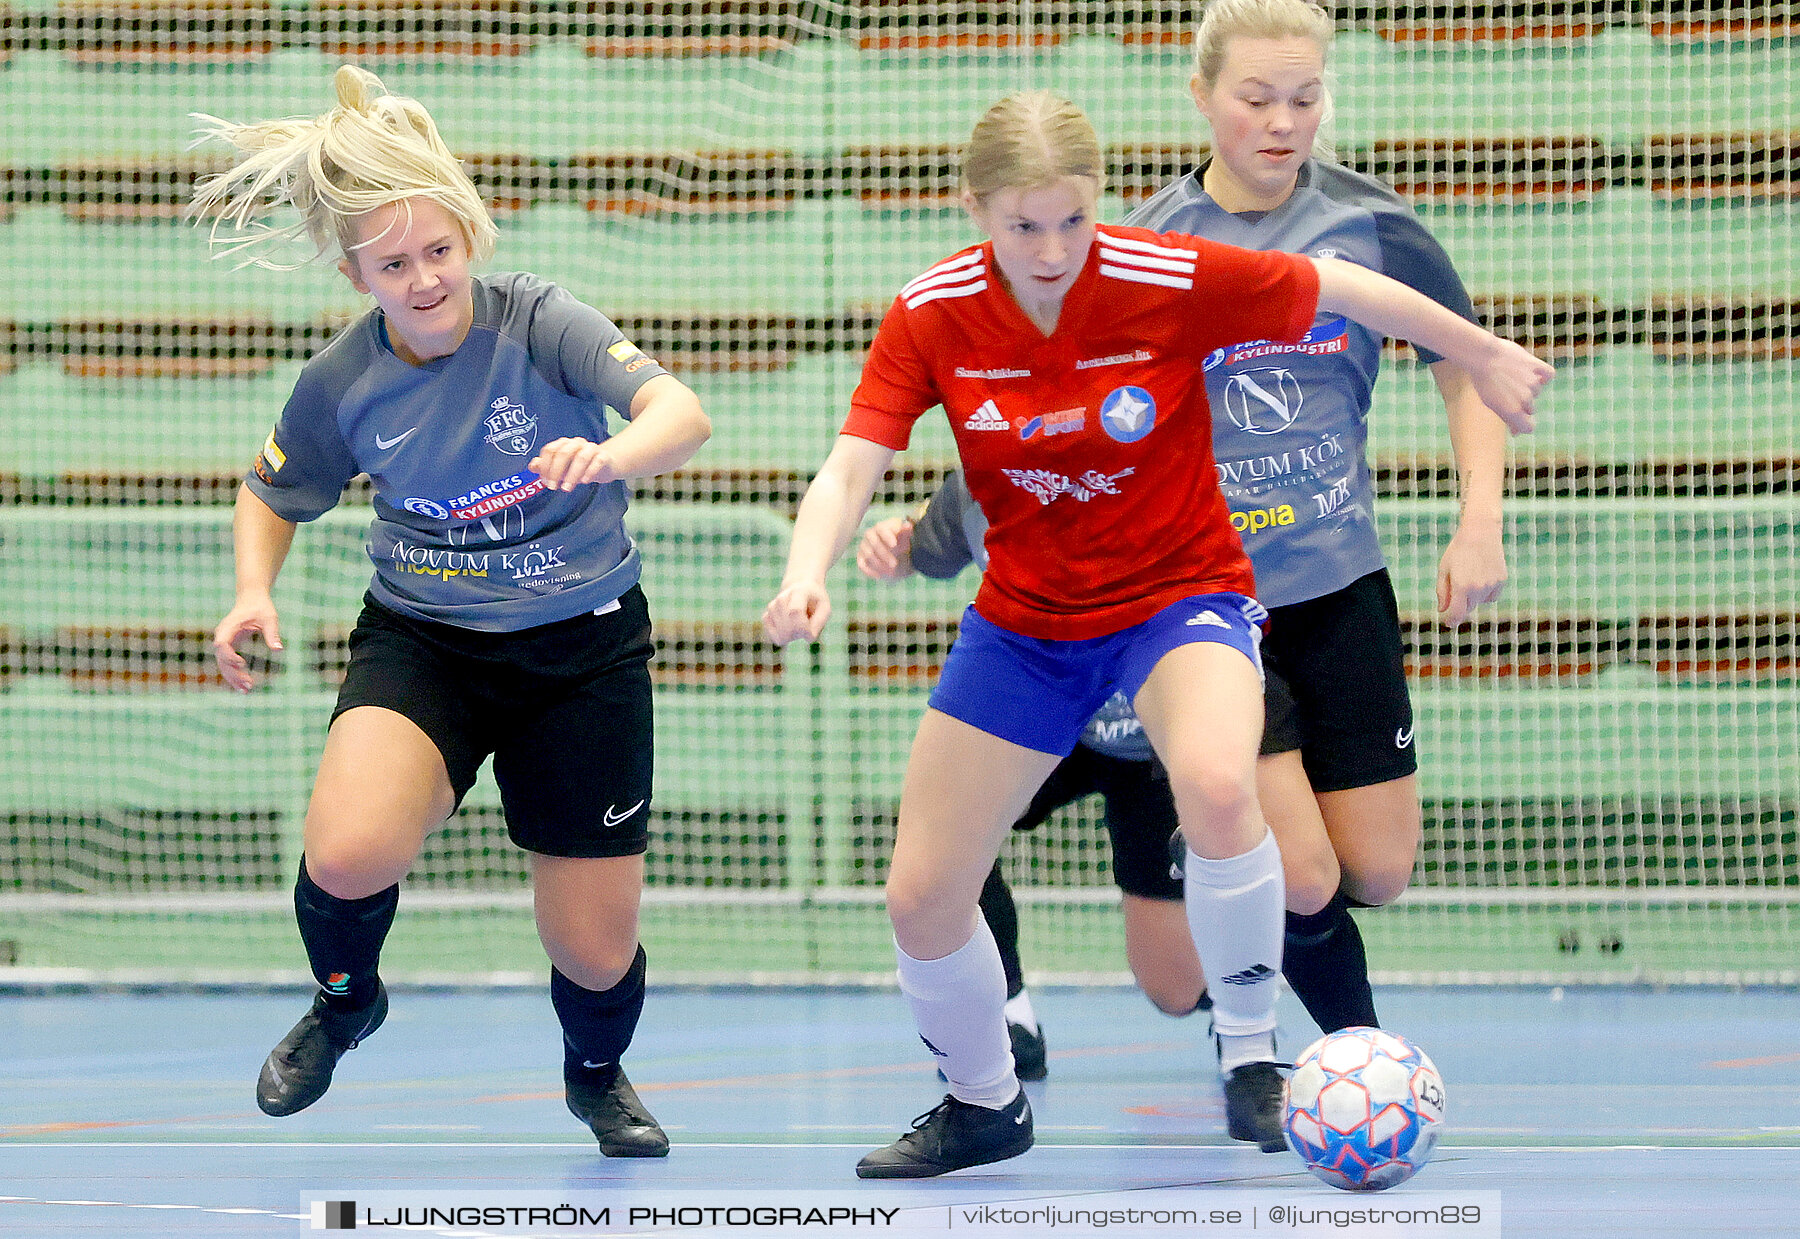 Skövde Futsalcup 2022 Damer Falköping Futsal Club-IFK Wreta Kloster 2 4-0,dam,Arena Skövde,Skövde,Sverige,Futsal,,2022,297577